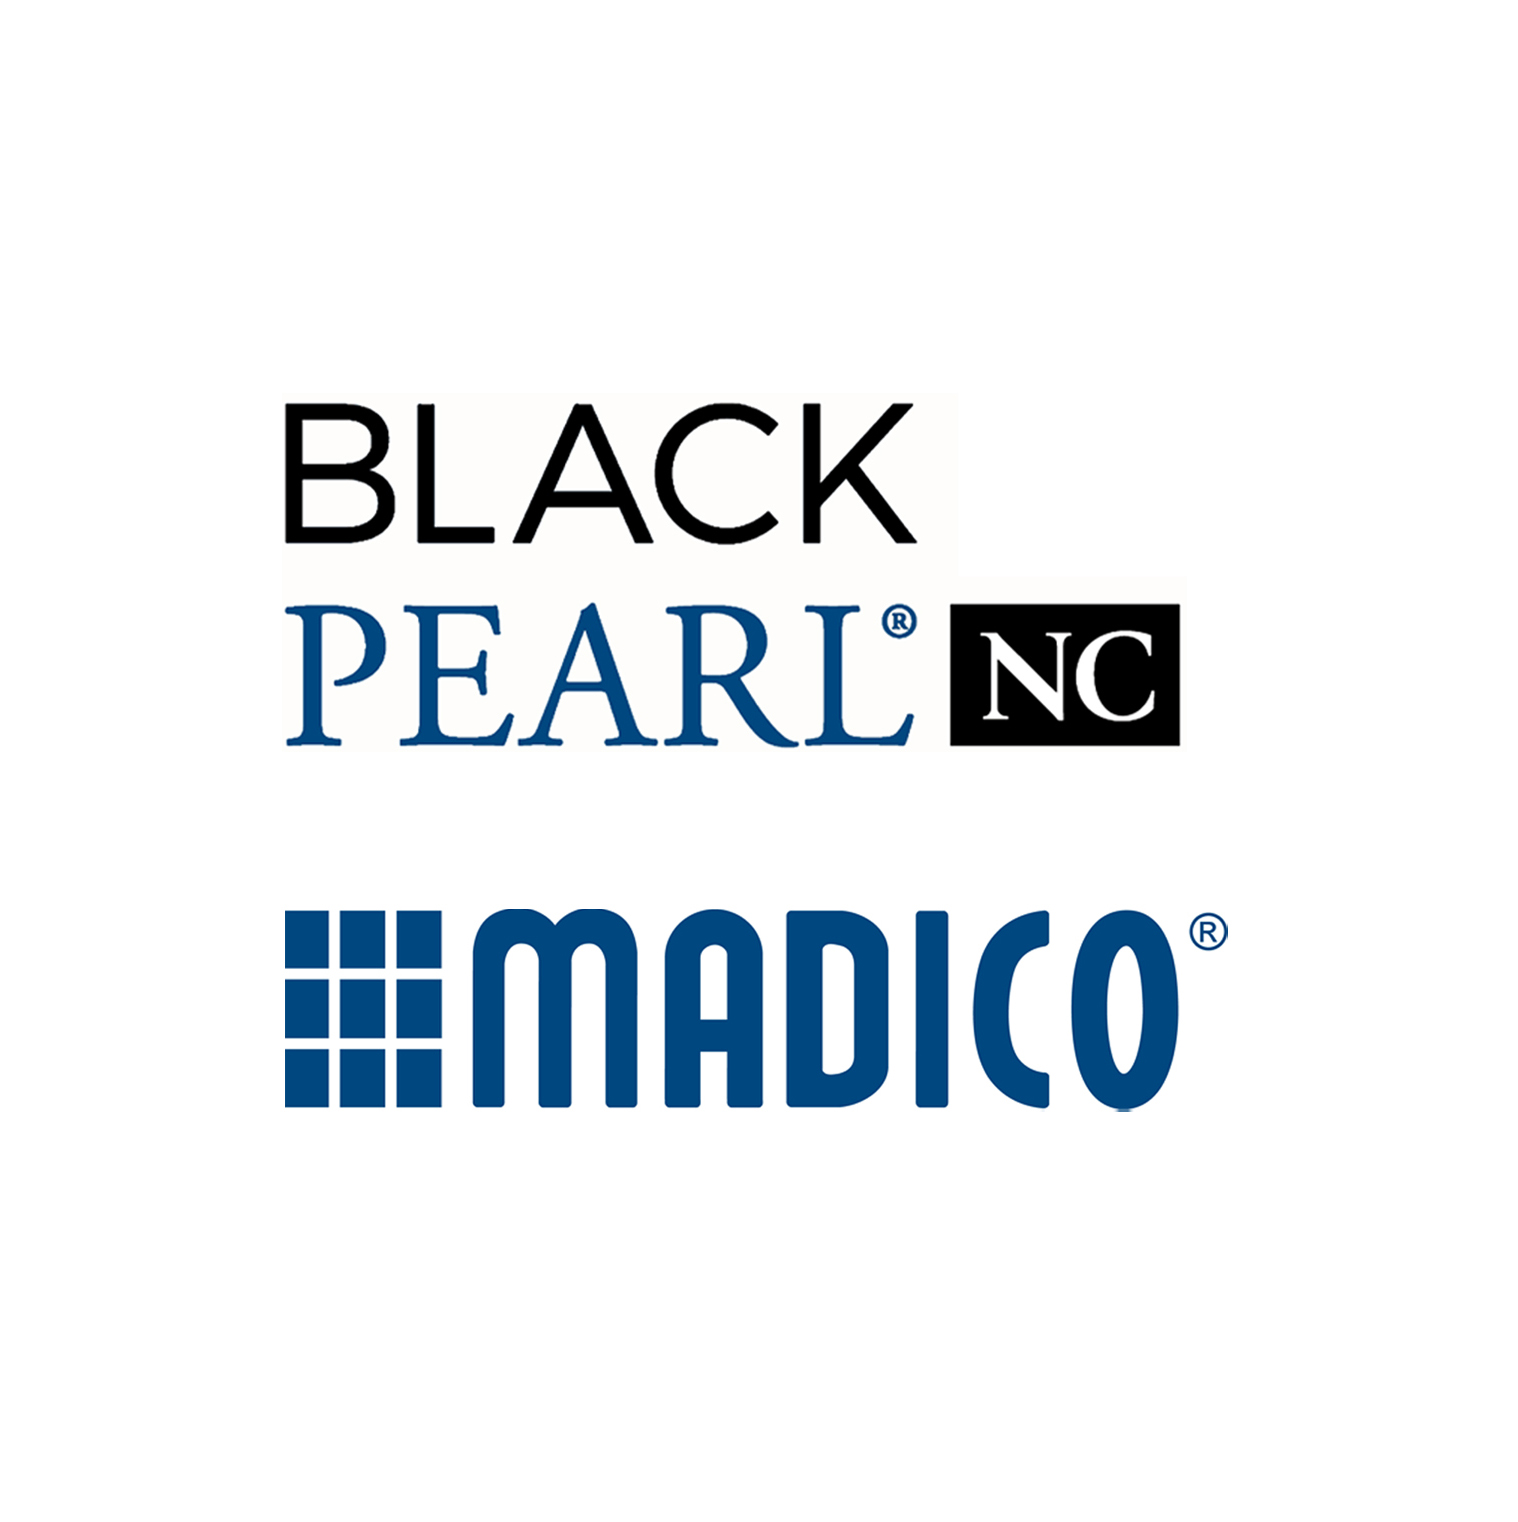 madico black pearl nano 20